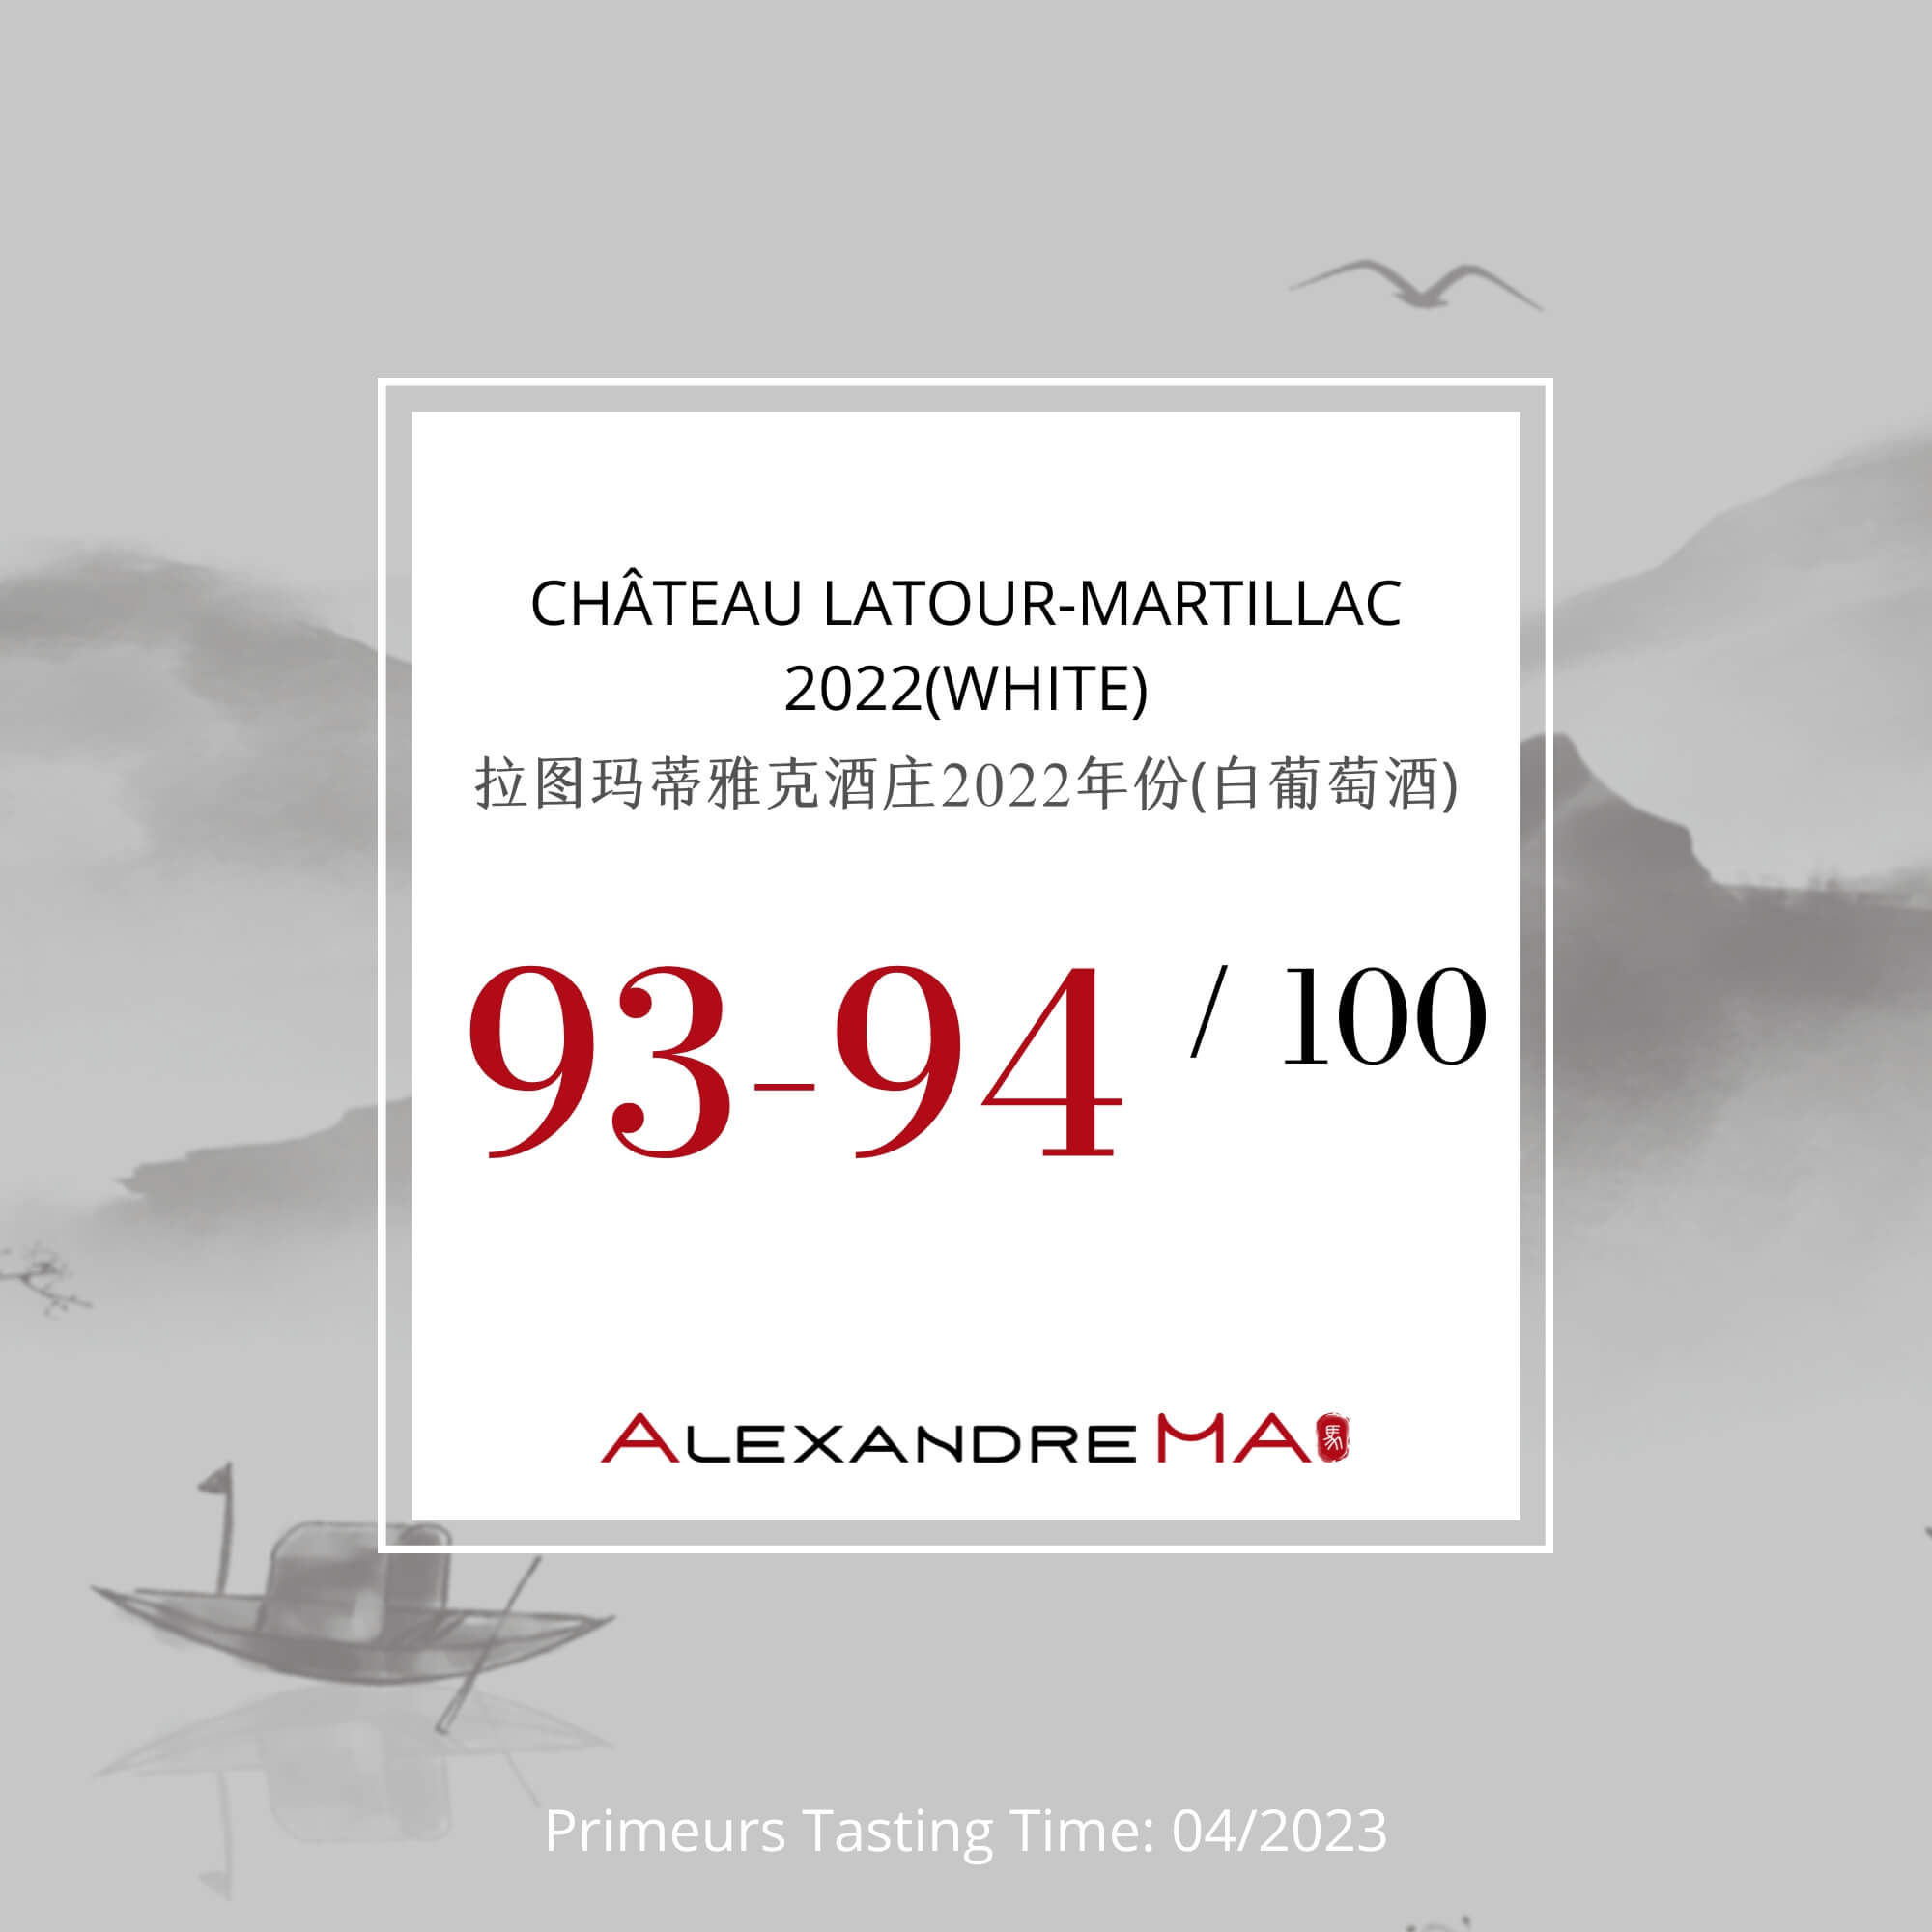 Château Latour-Martillac 2022-White Primeurs - Alexandre MA